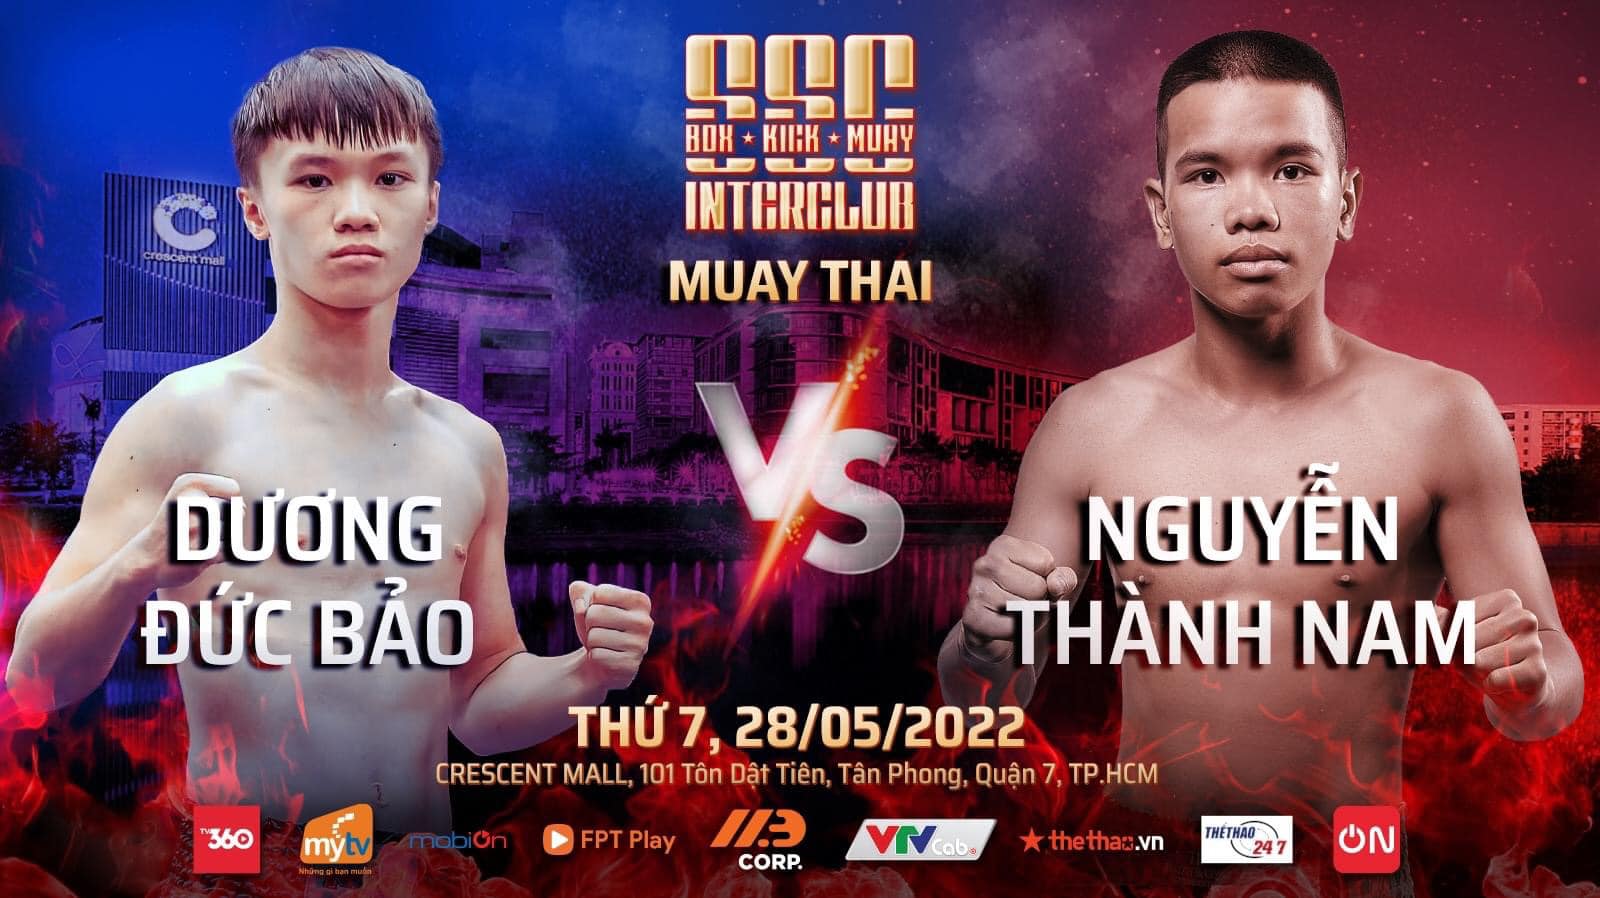 Sự kiện 3 môn võ Boxing, Kickboxing, Muay Thái tổ chức ở TPHCM ngày 28/5 - Ảnh 11